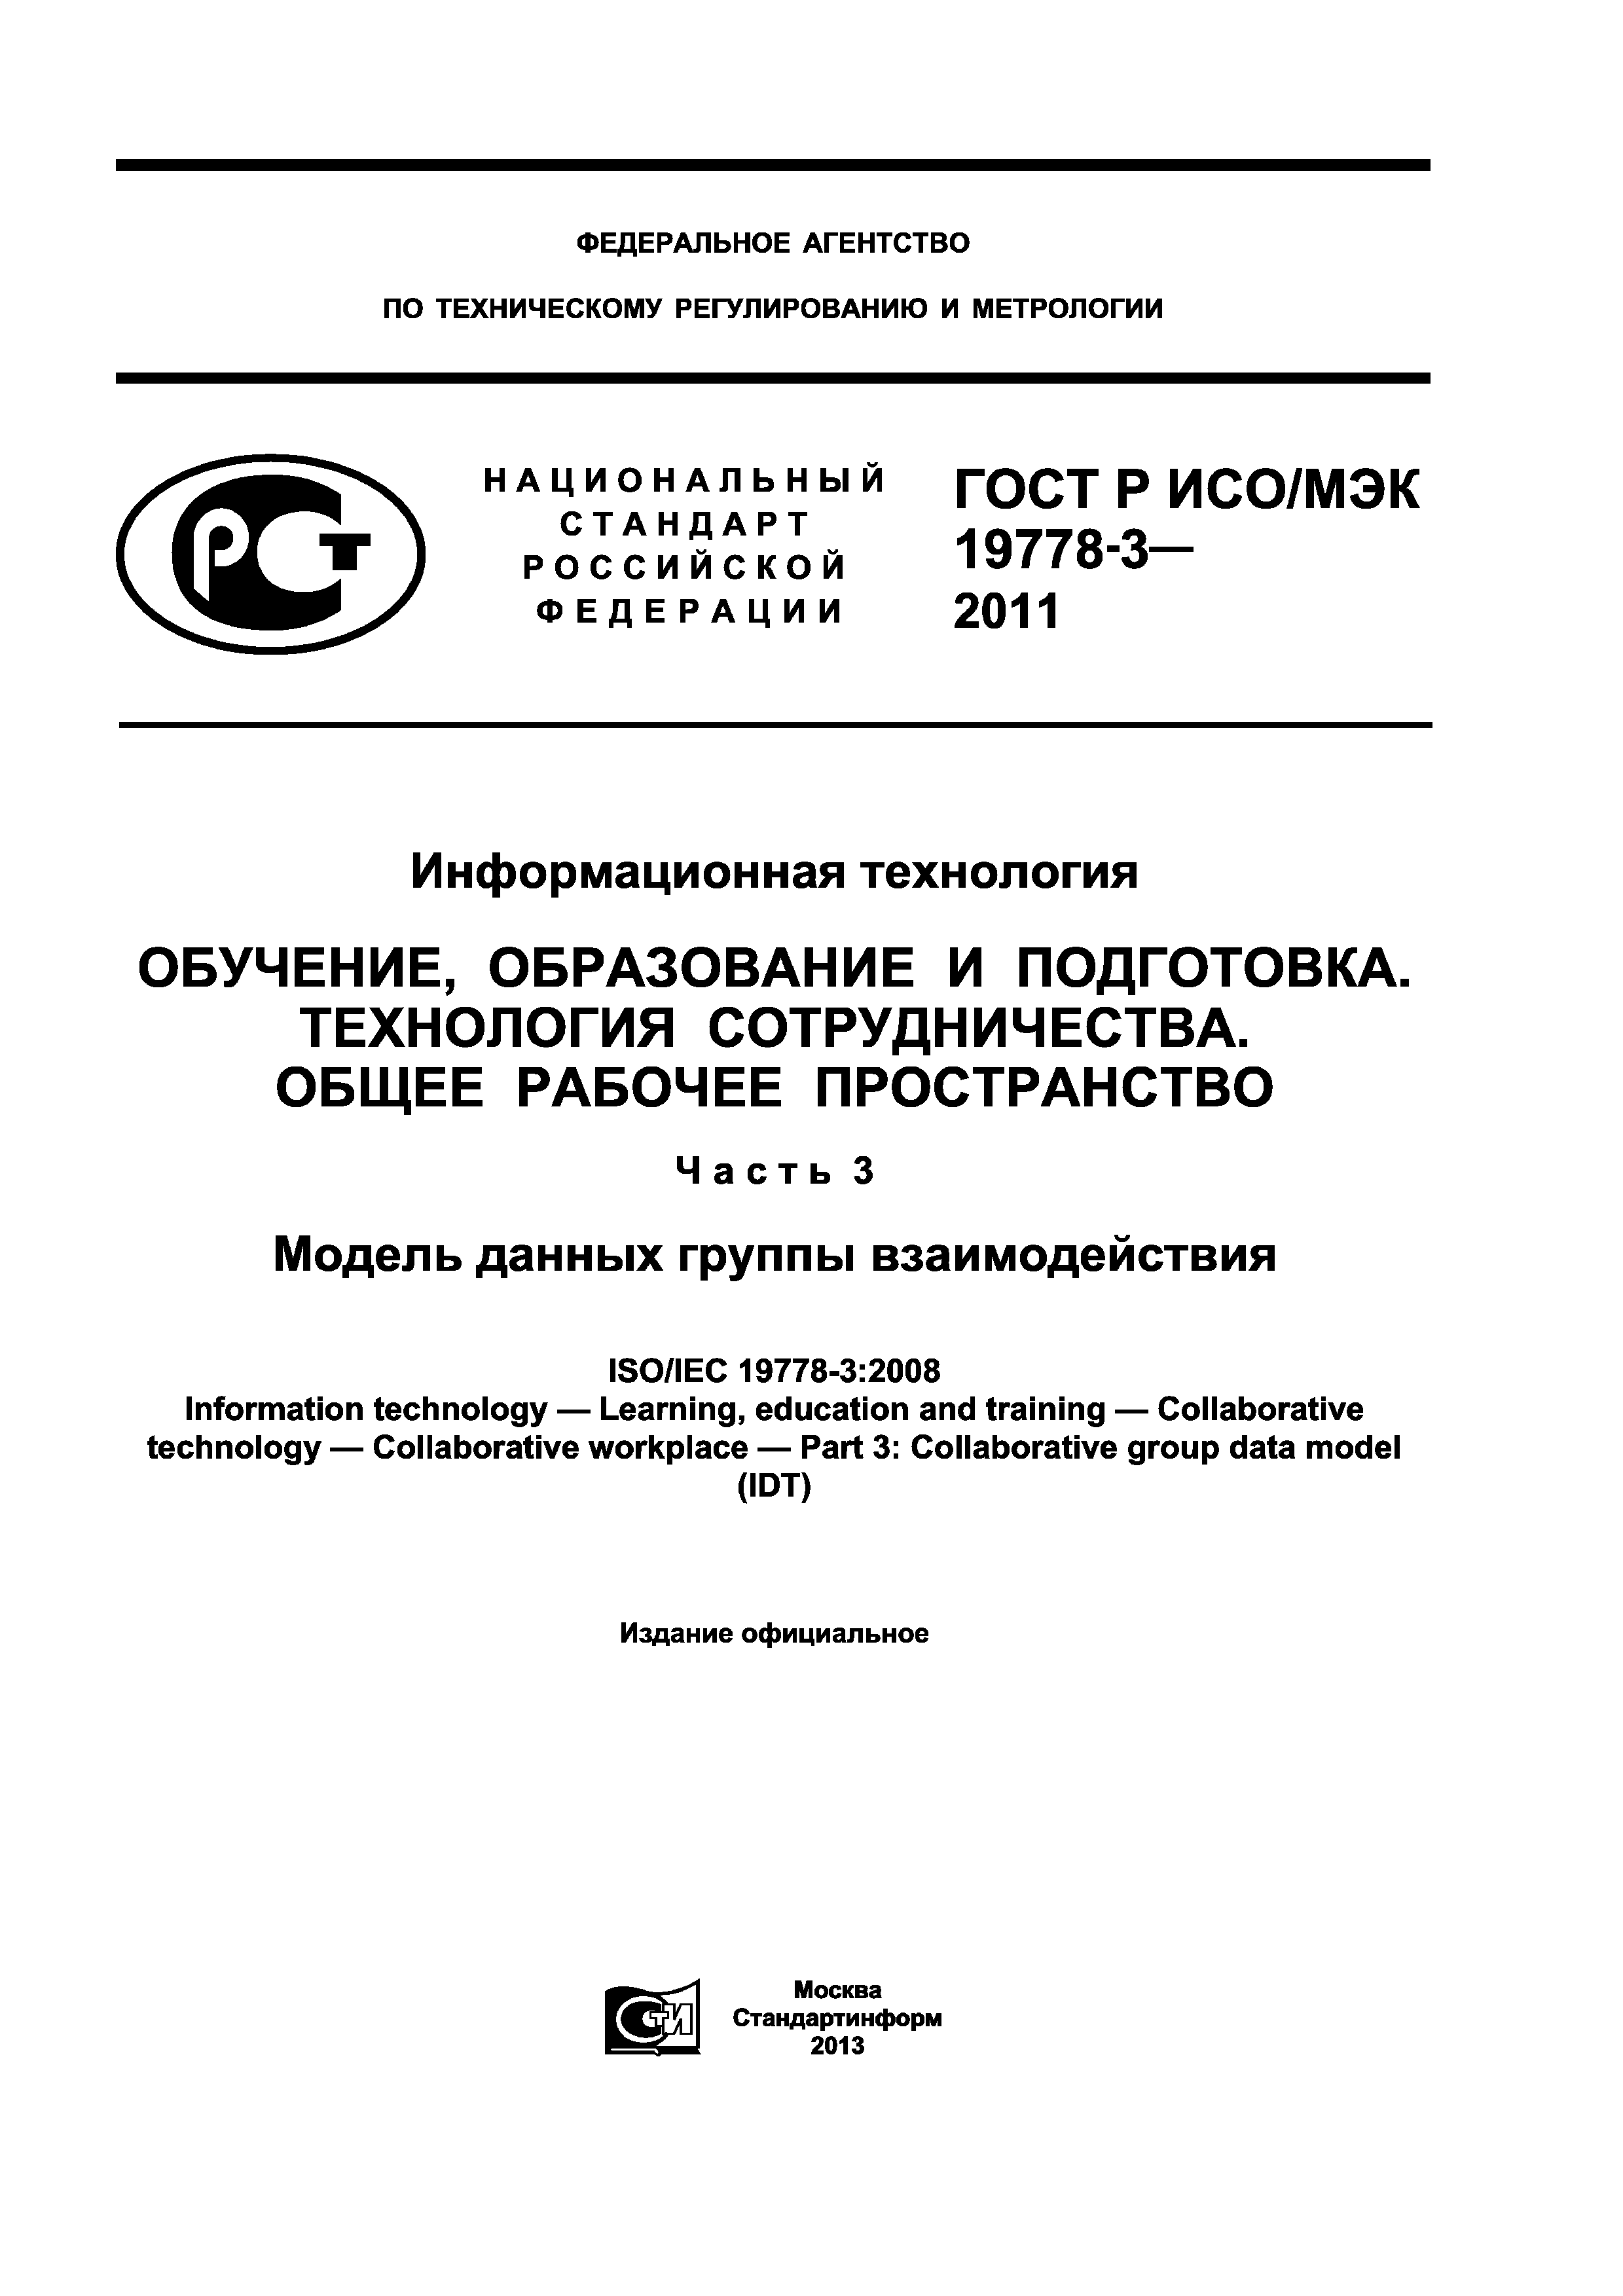 ГОСТ Р ИСО/МЭК 19778-3-2011